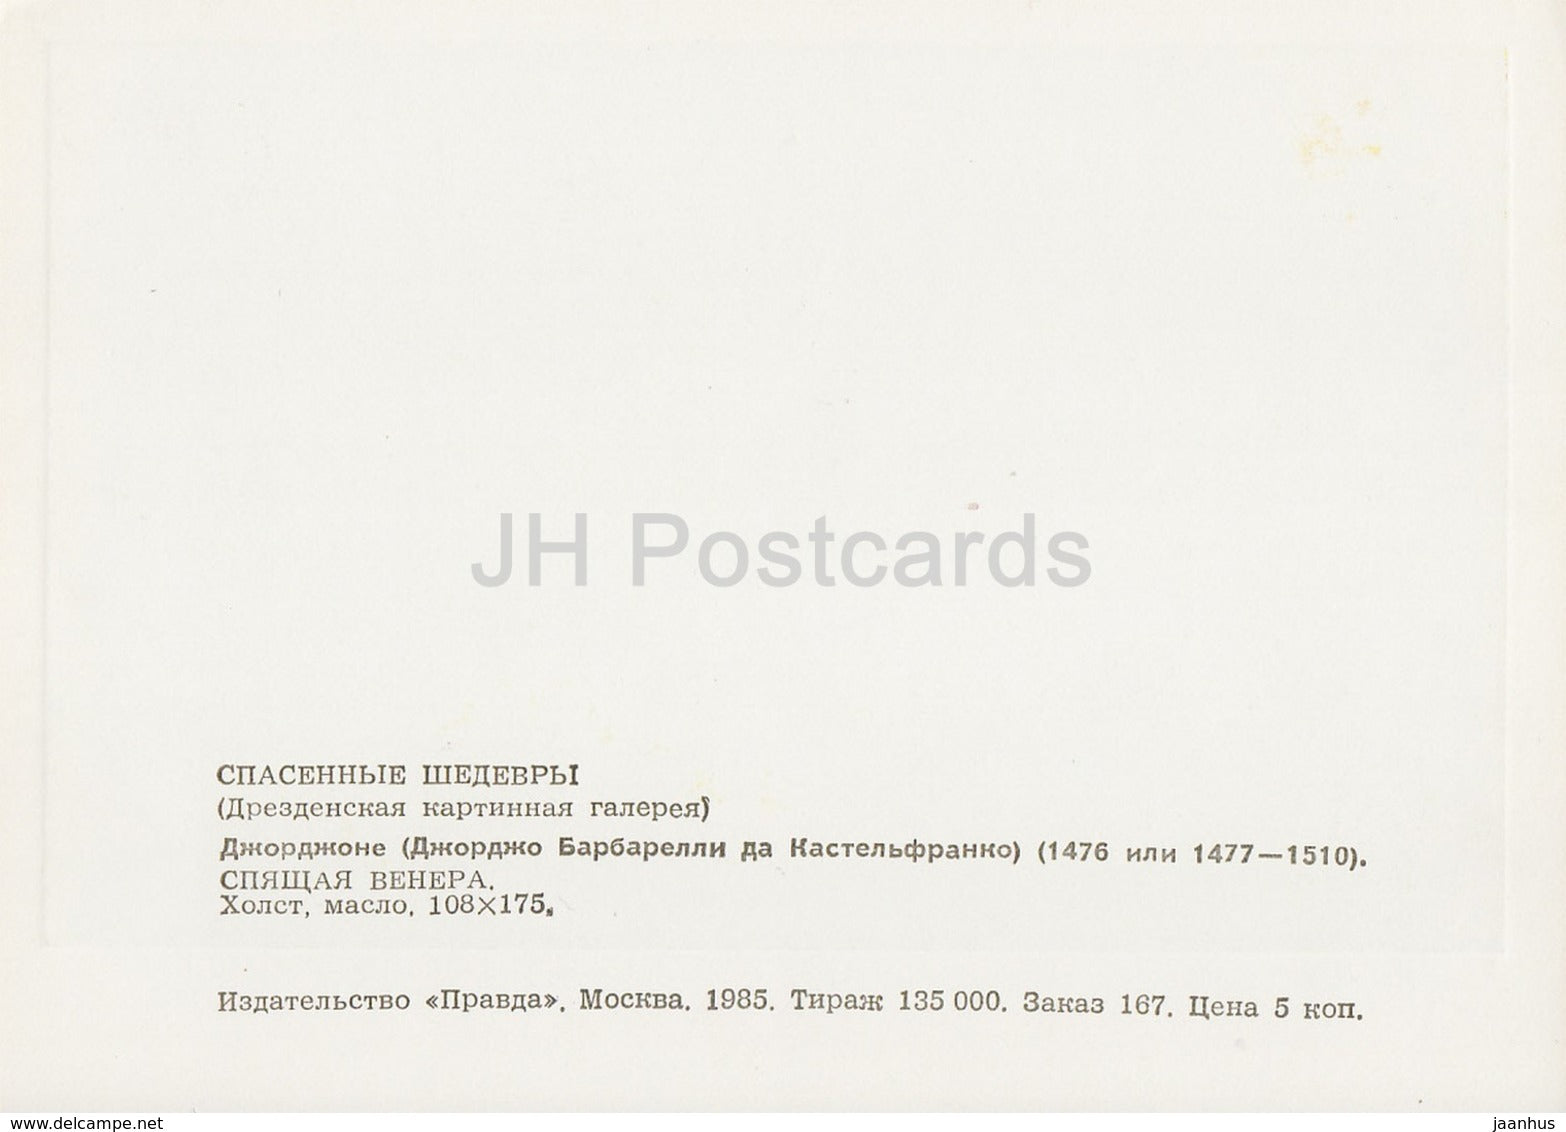 painting by Giorgione - Sleeping Venus - italian art - 1985 - Russia USSR - unused - JH Postcards